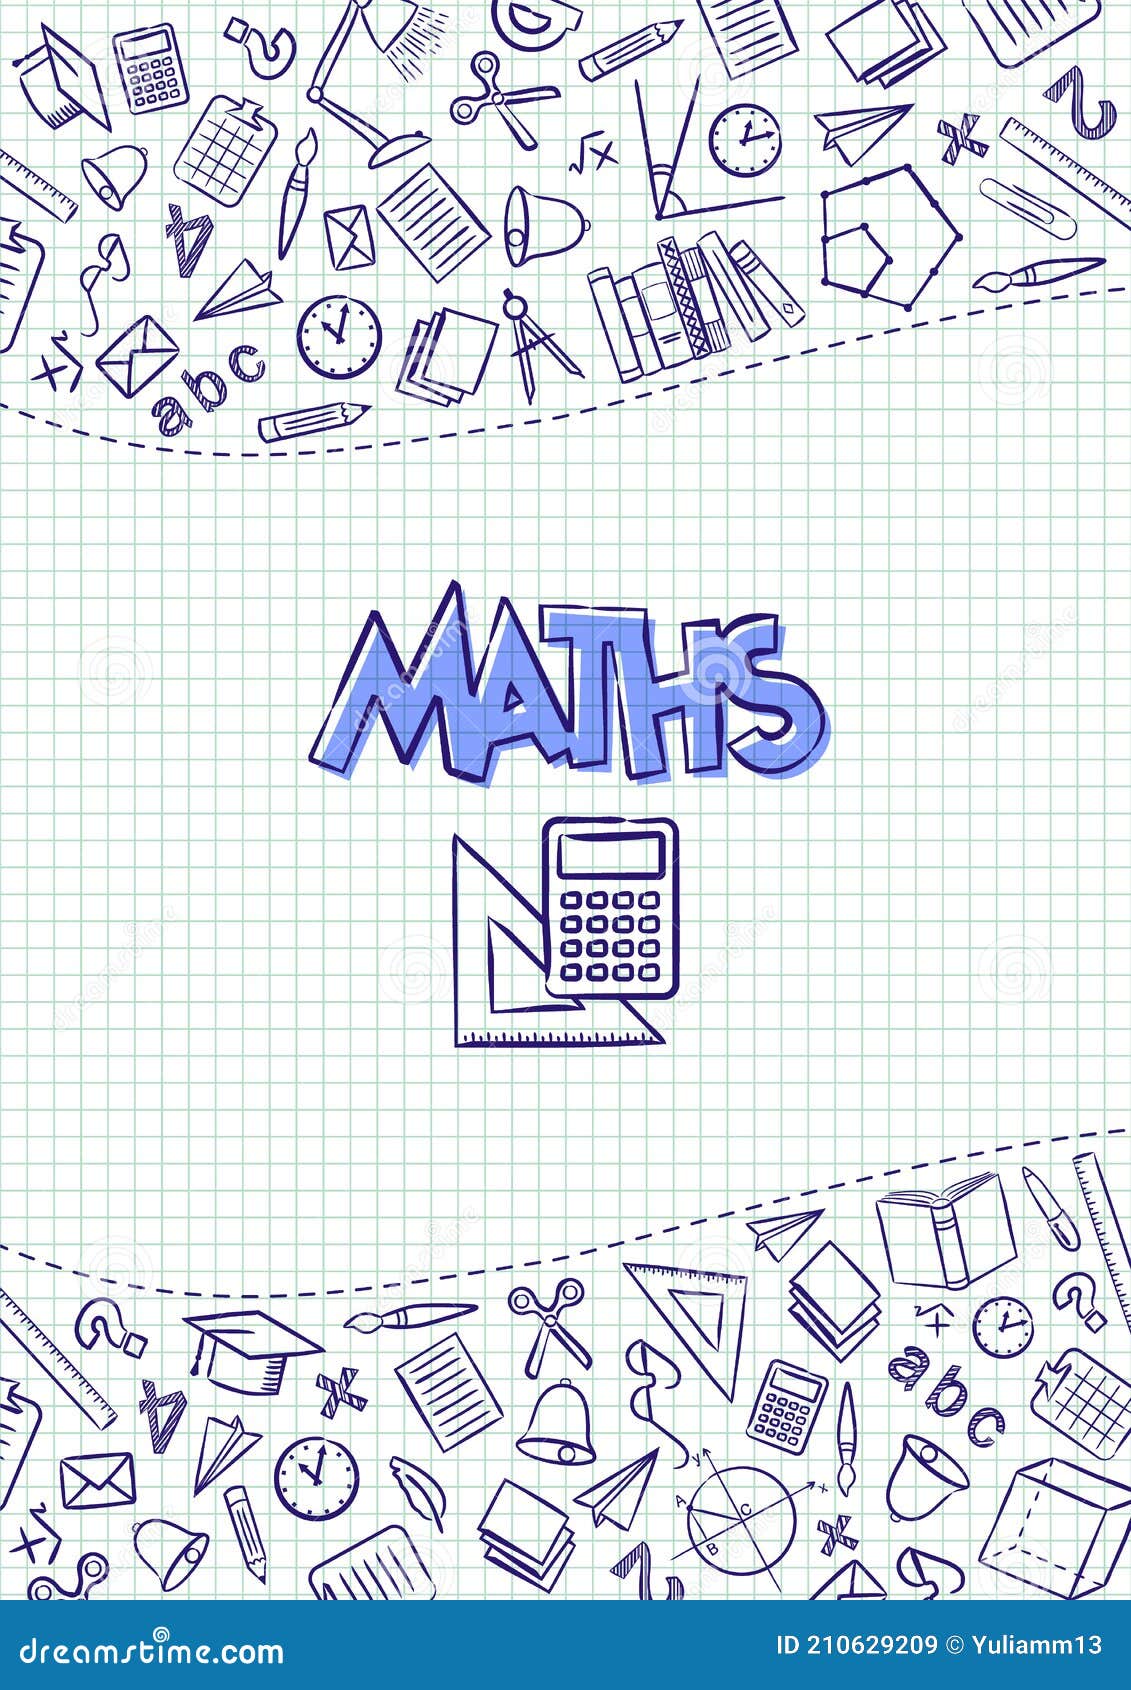 Math Cover Photo